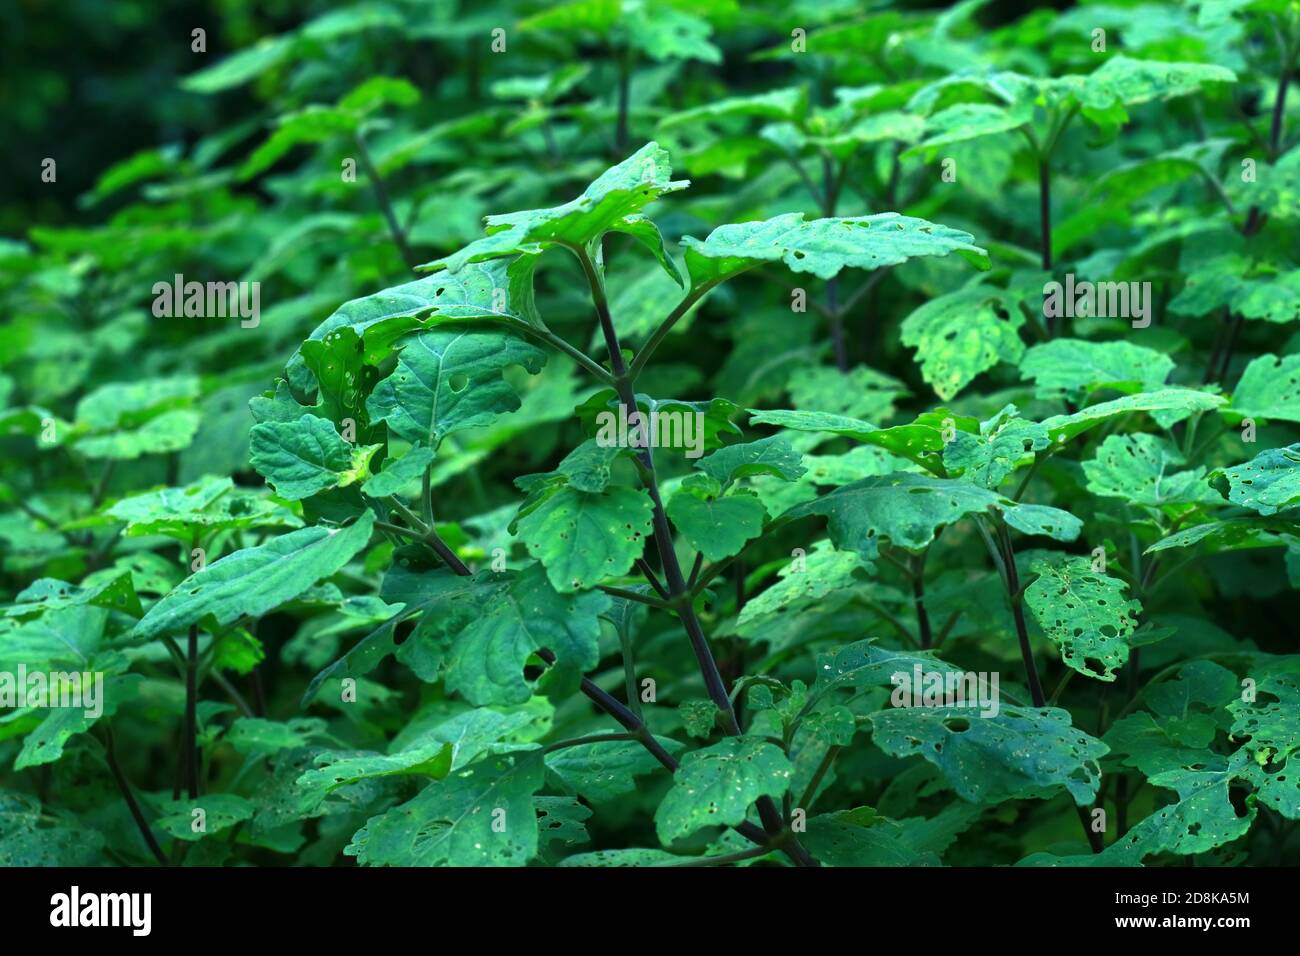 Nilam plant or Pogostemon cablin in the garden. Stock Photo